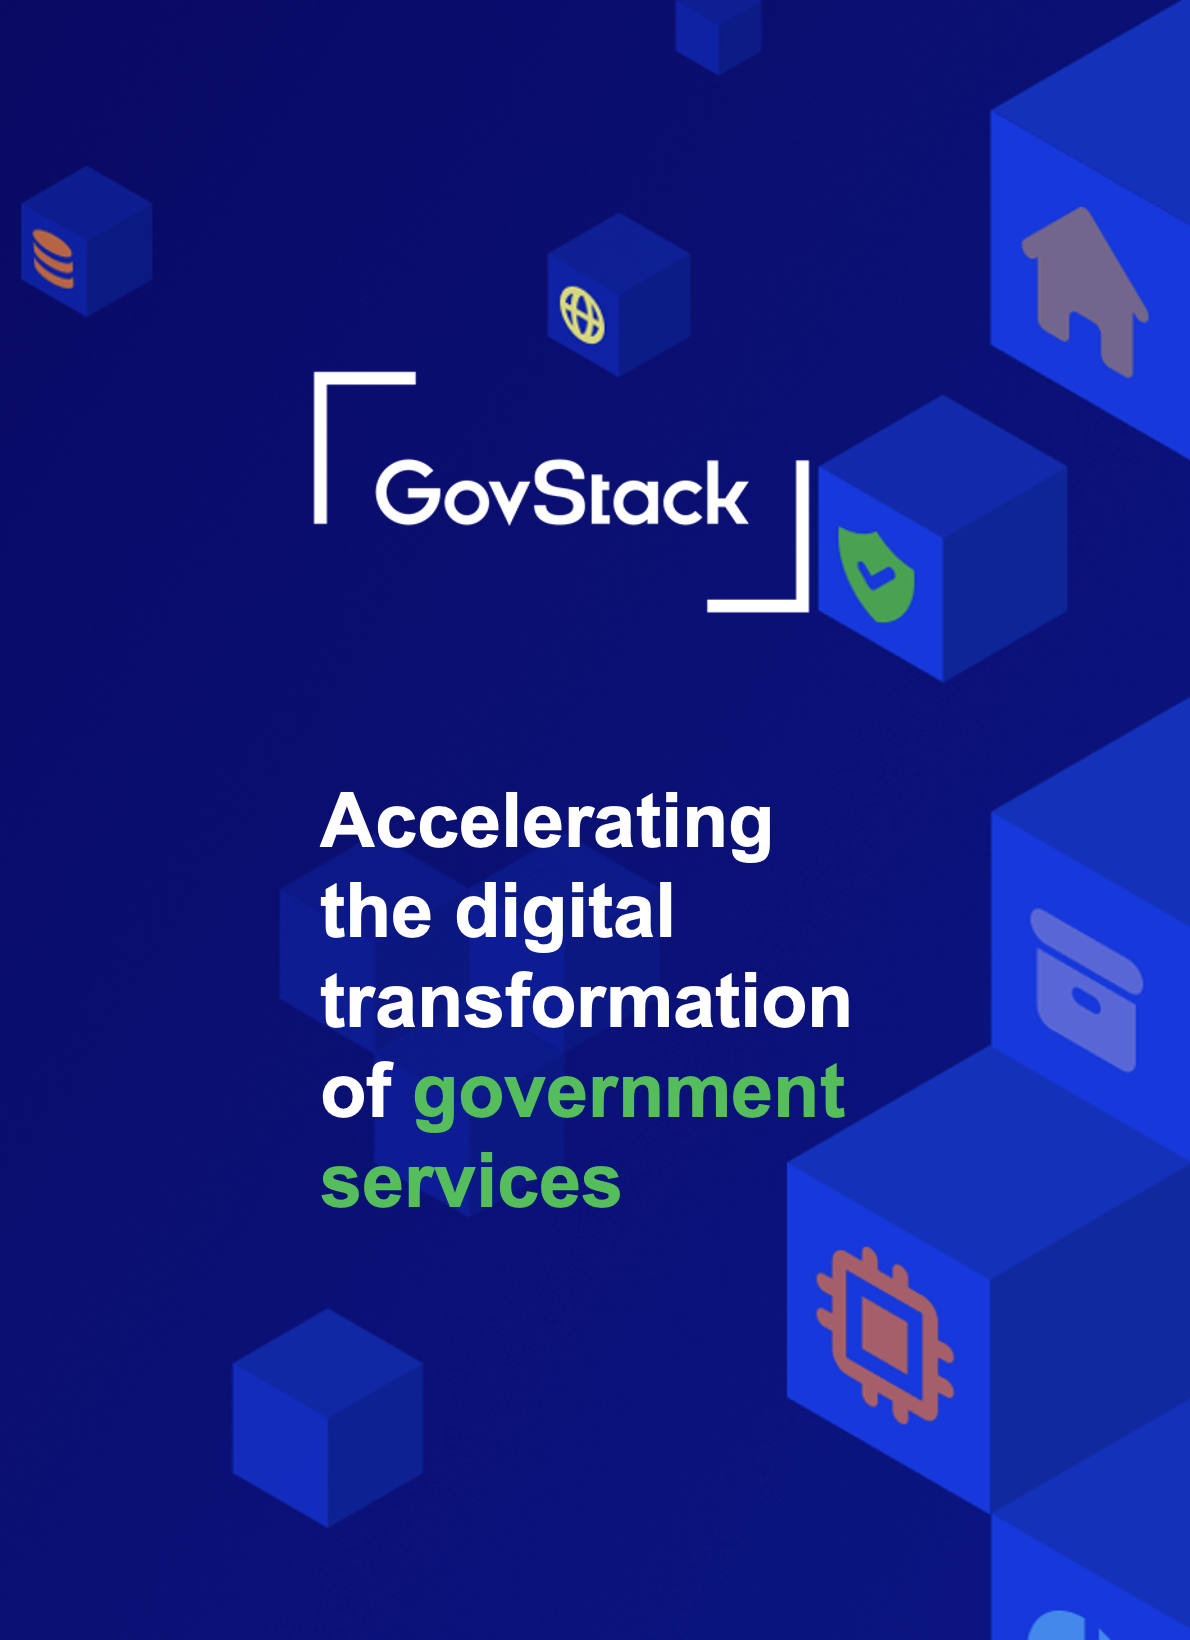 L'initiative GovStack vise à aider les gouvernements à construire une infrastructure numérique durable et à fournir des services numériques à dimension humaine. Découvrez comment tirer parti de cette initiative et y contribuer!